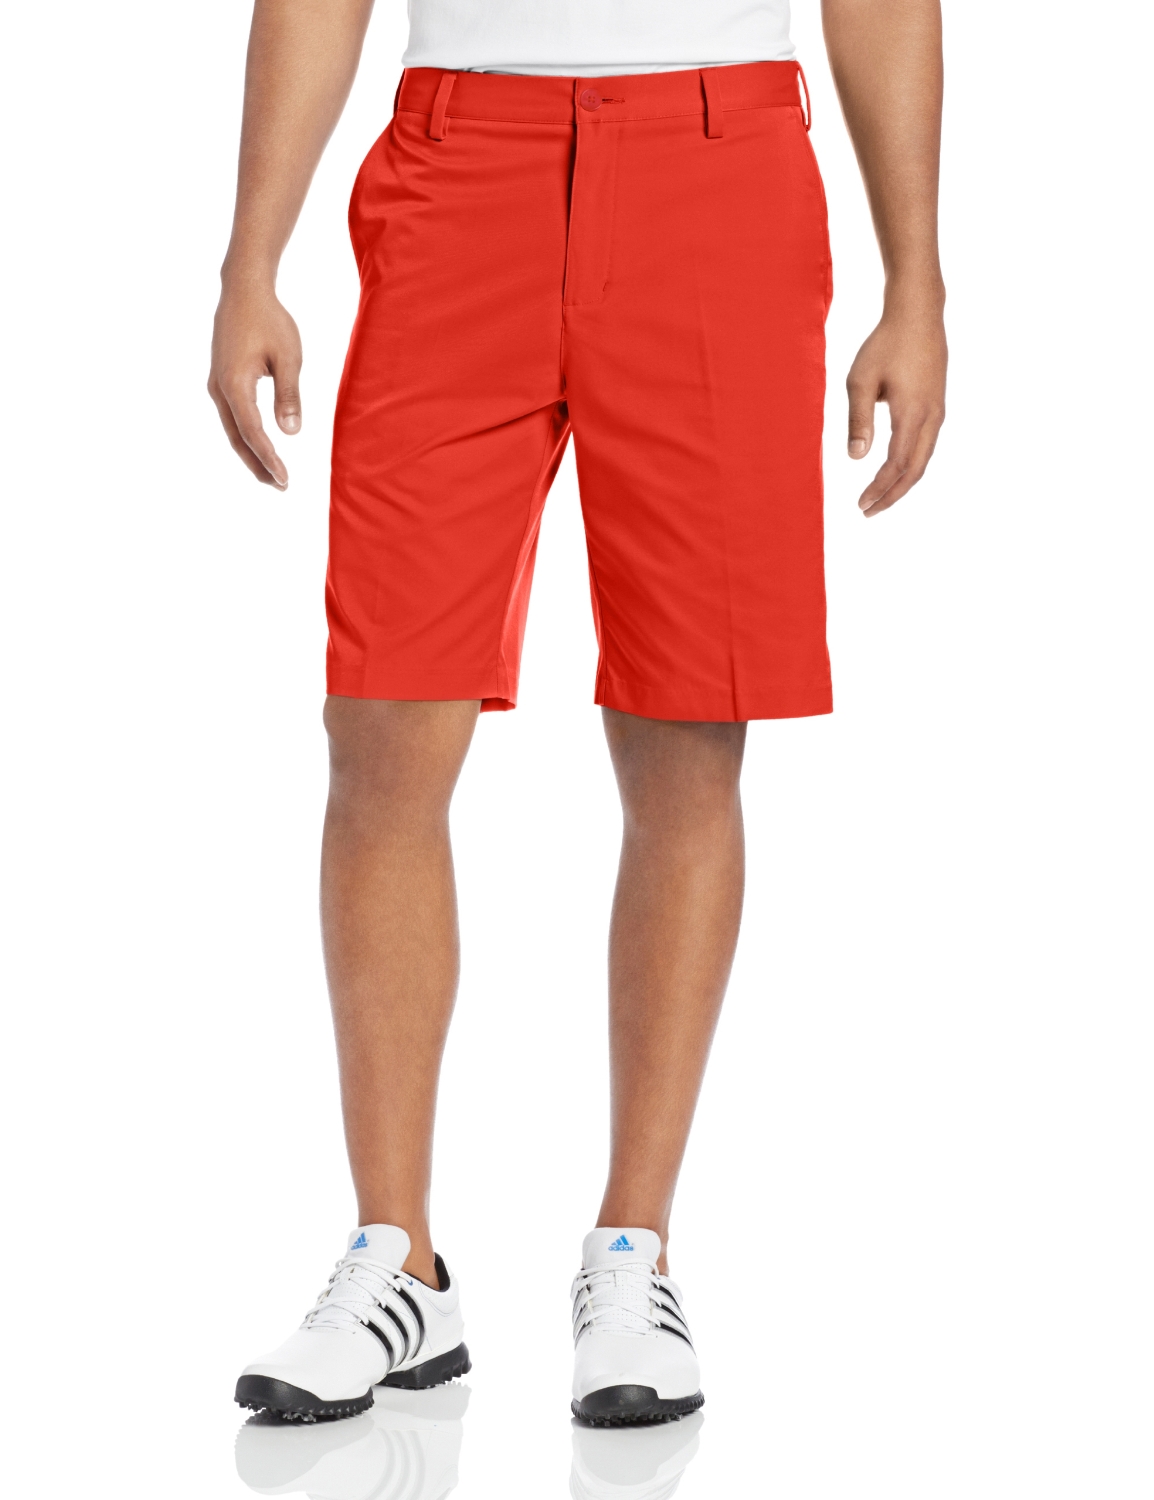 Adidas Flat Front Golf Shorts